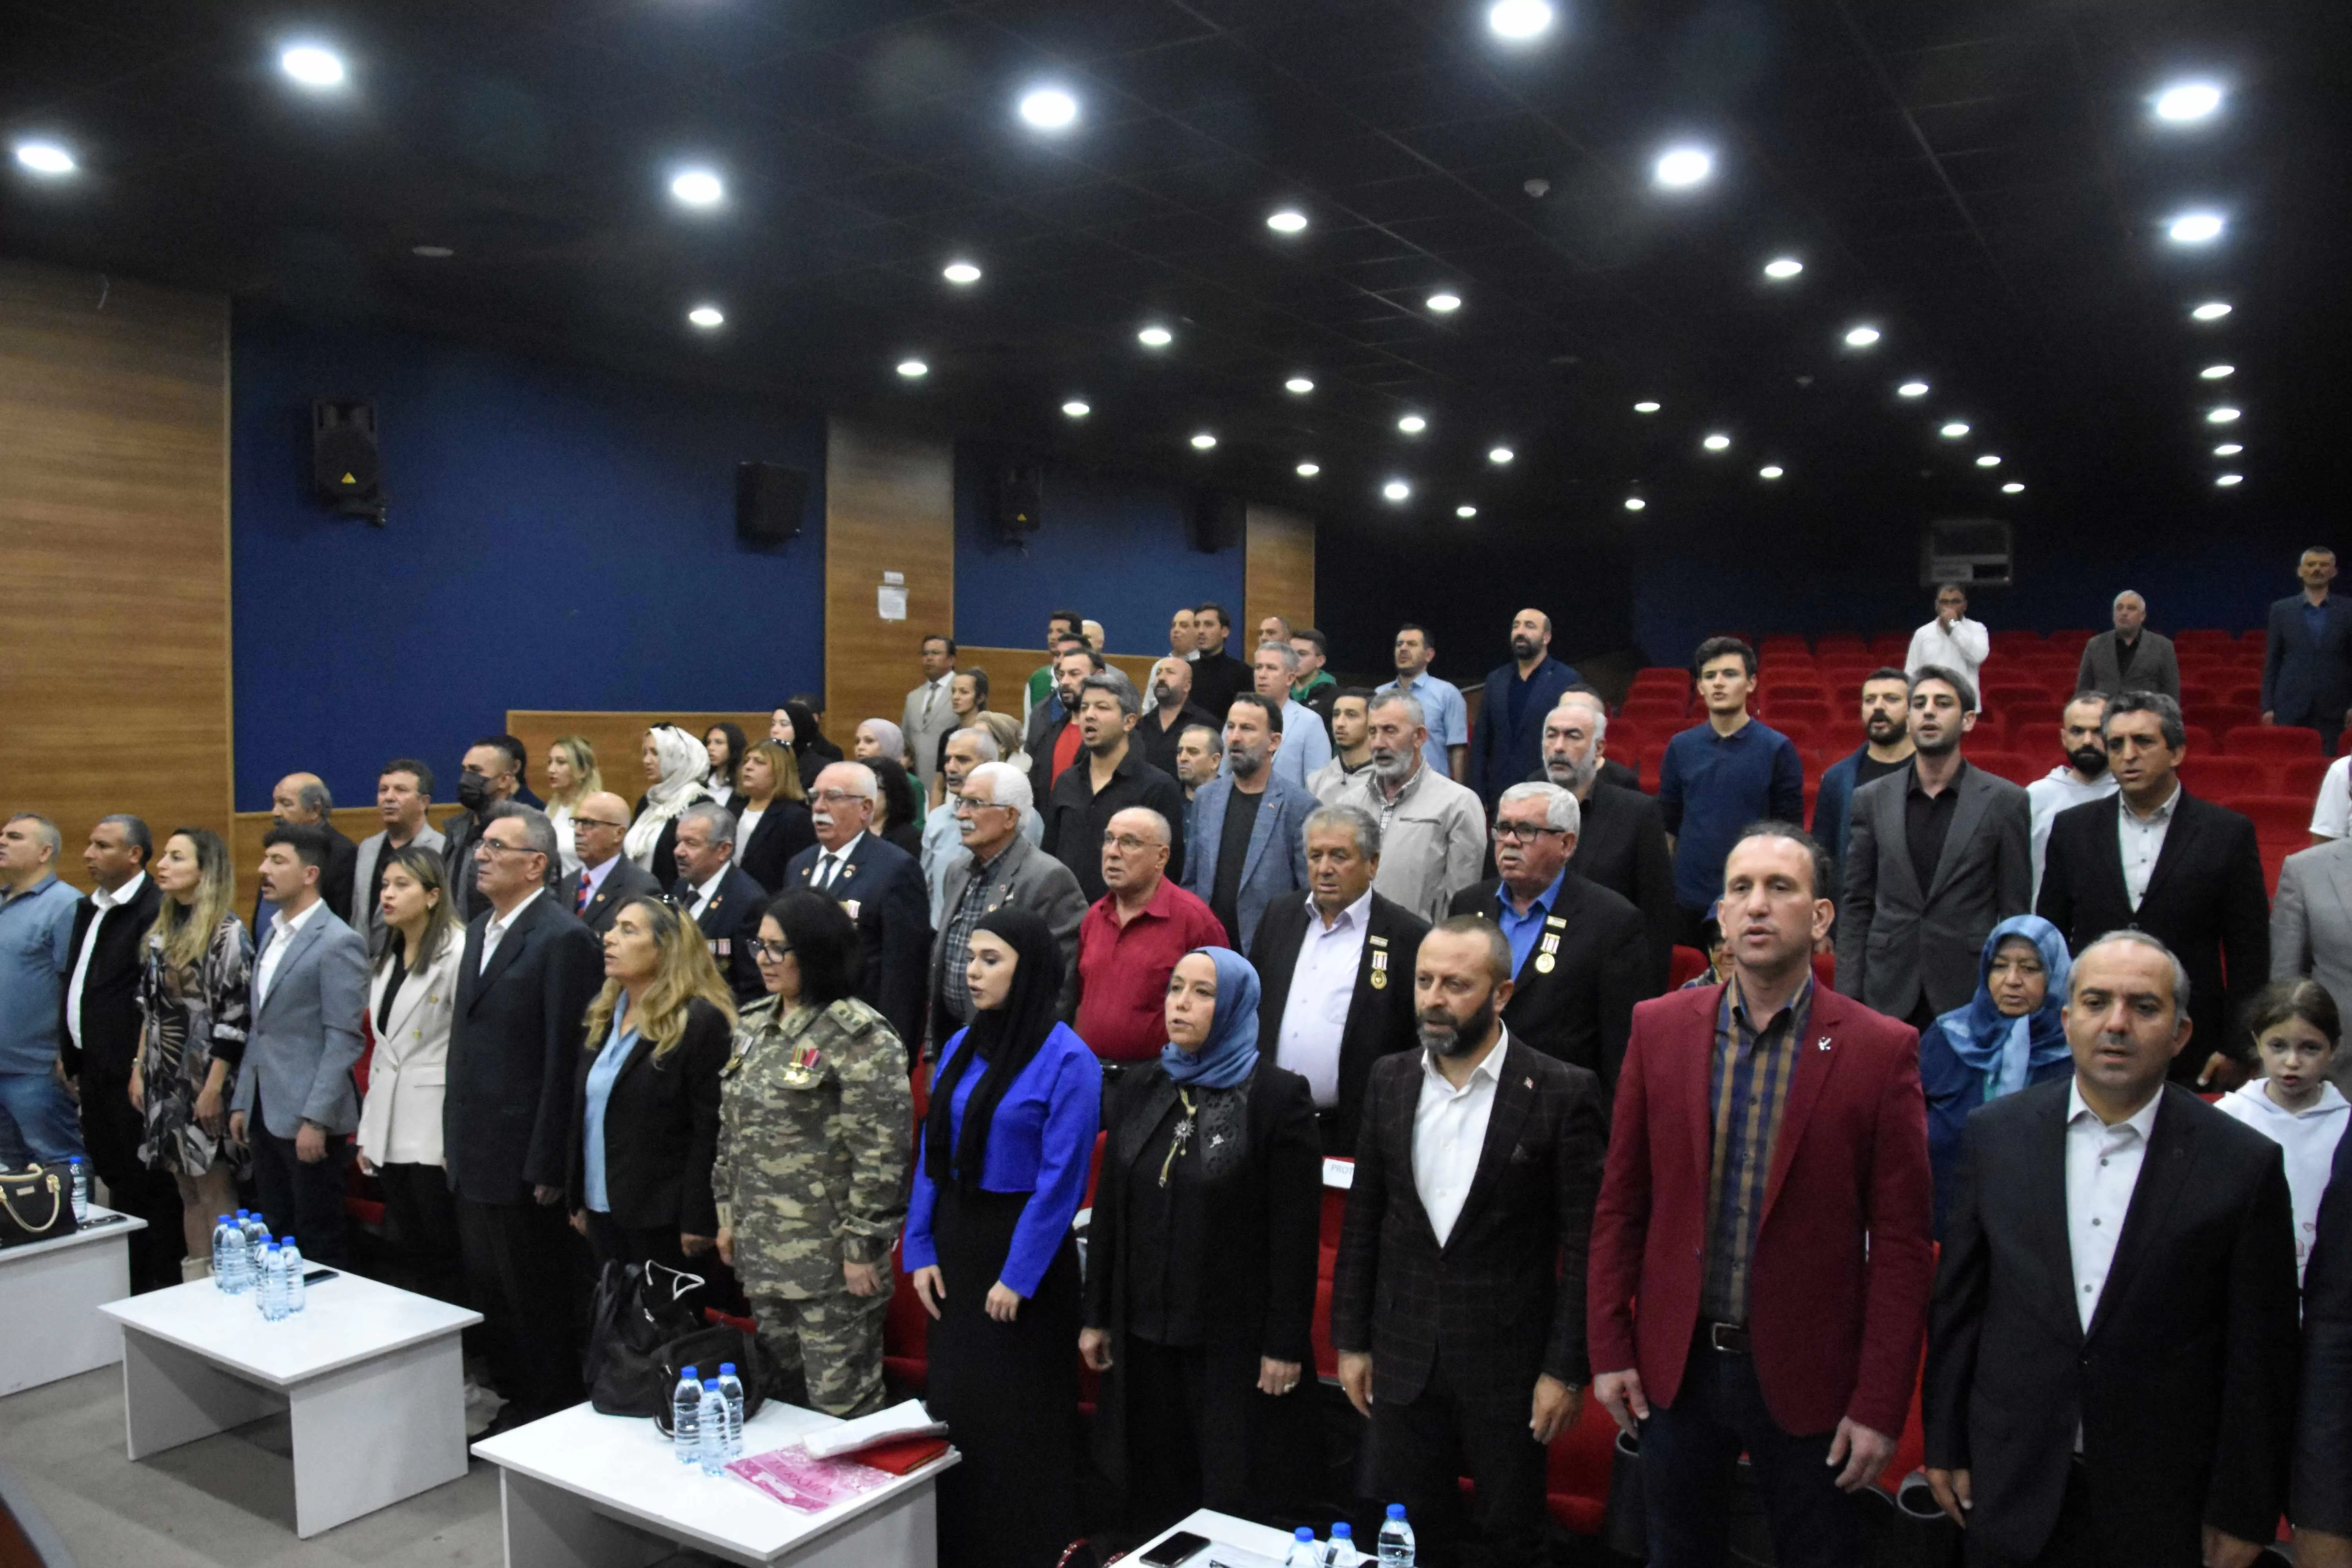 Aliağa Belediyesi Meclis salonunda gerçekleşen konferans, "Dünden Bugüne Azerbaycan" konulu bir etkinlikti. 